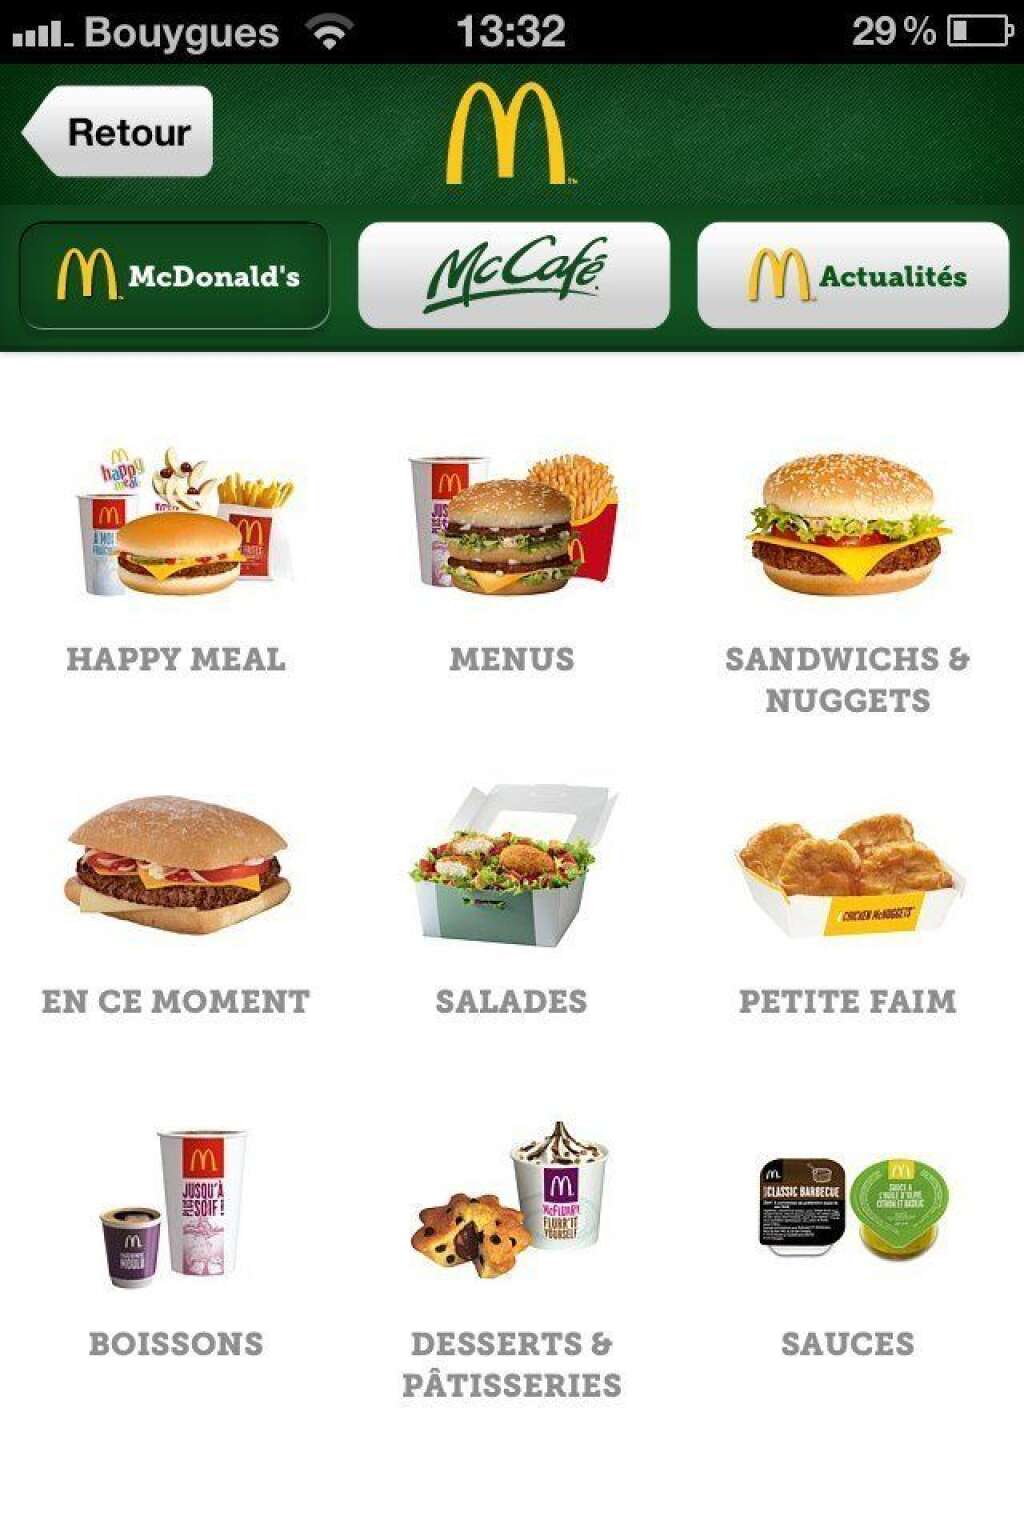 28 août 2012: McDonald's lance GoMcDo sur mobile... - ...une application pour commander et payer via son smartphone.  Lire l'<a href="http://www.huffingtonpost.fr/2012/08/28/mcdonalds-lance-gomcdo-sur-mobile-application-commander-payer-smartphone_n_1835559.html">article</a>.